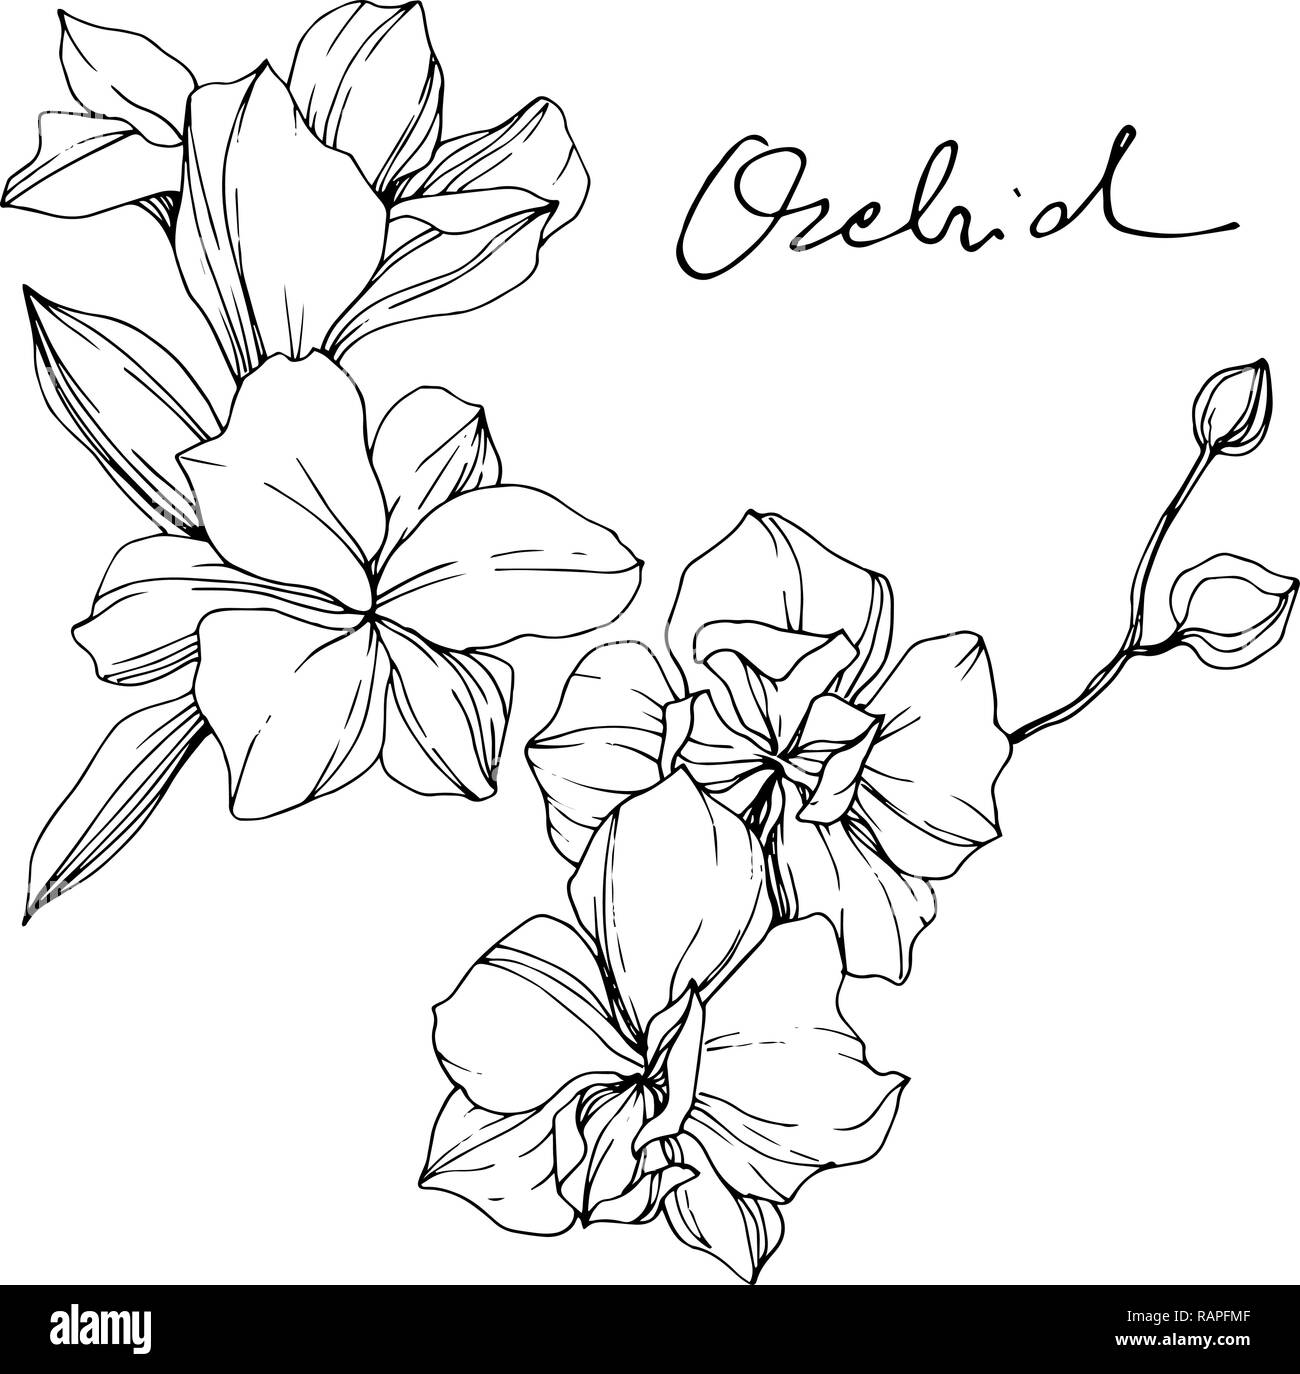 Орхидея рисунок карандашом поэтапно